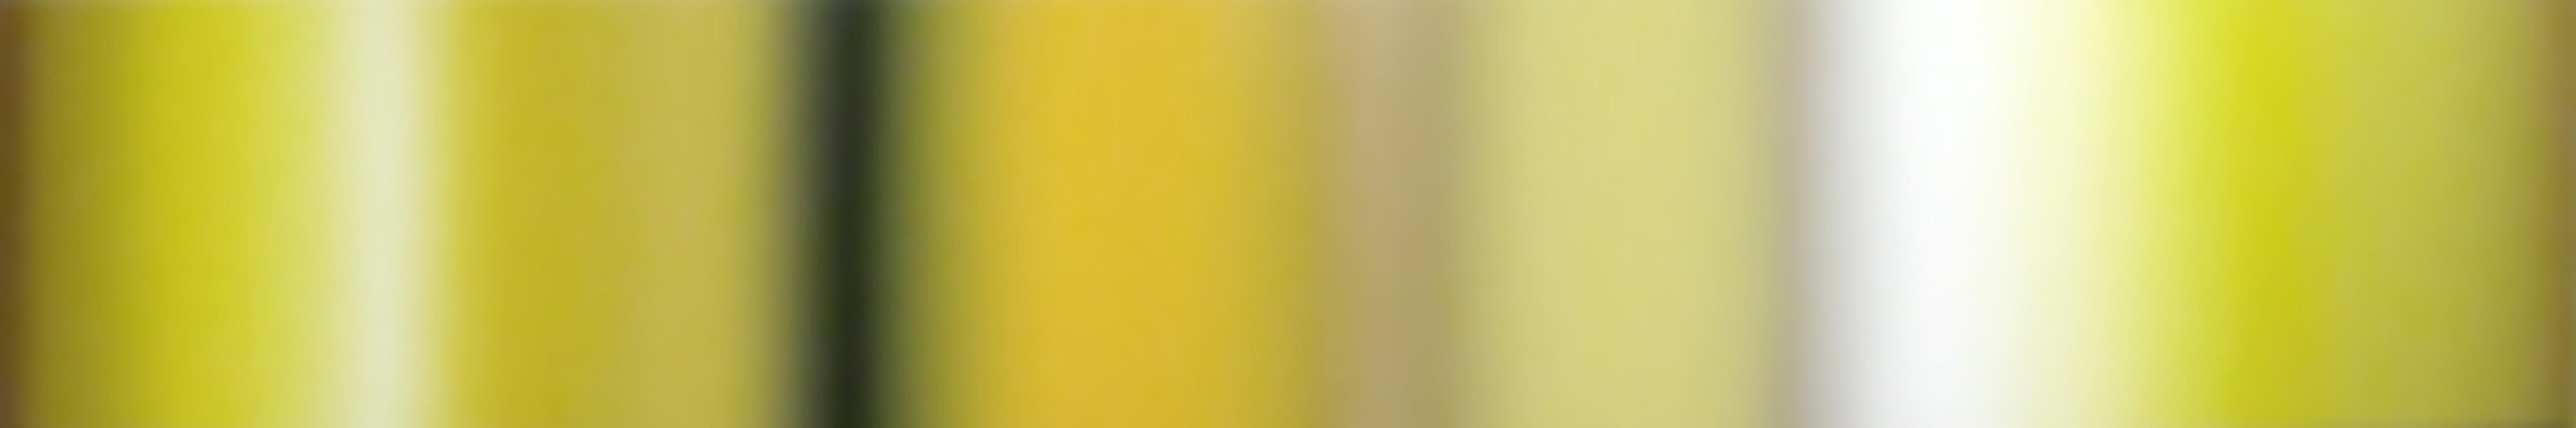 Patrick Dintino Abstract Painting – Goldrush – großes abstraktes Ölgemälde in Erdtönen, gelben, beige und weißen Streifen